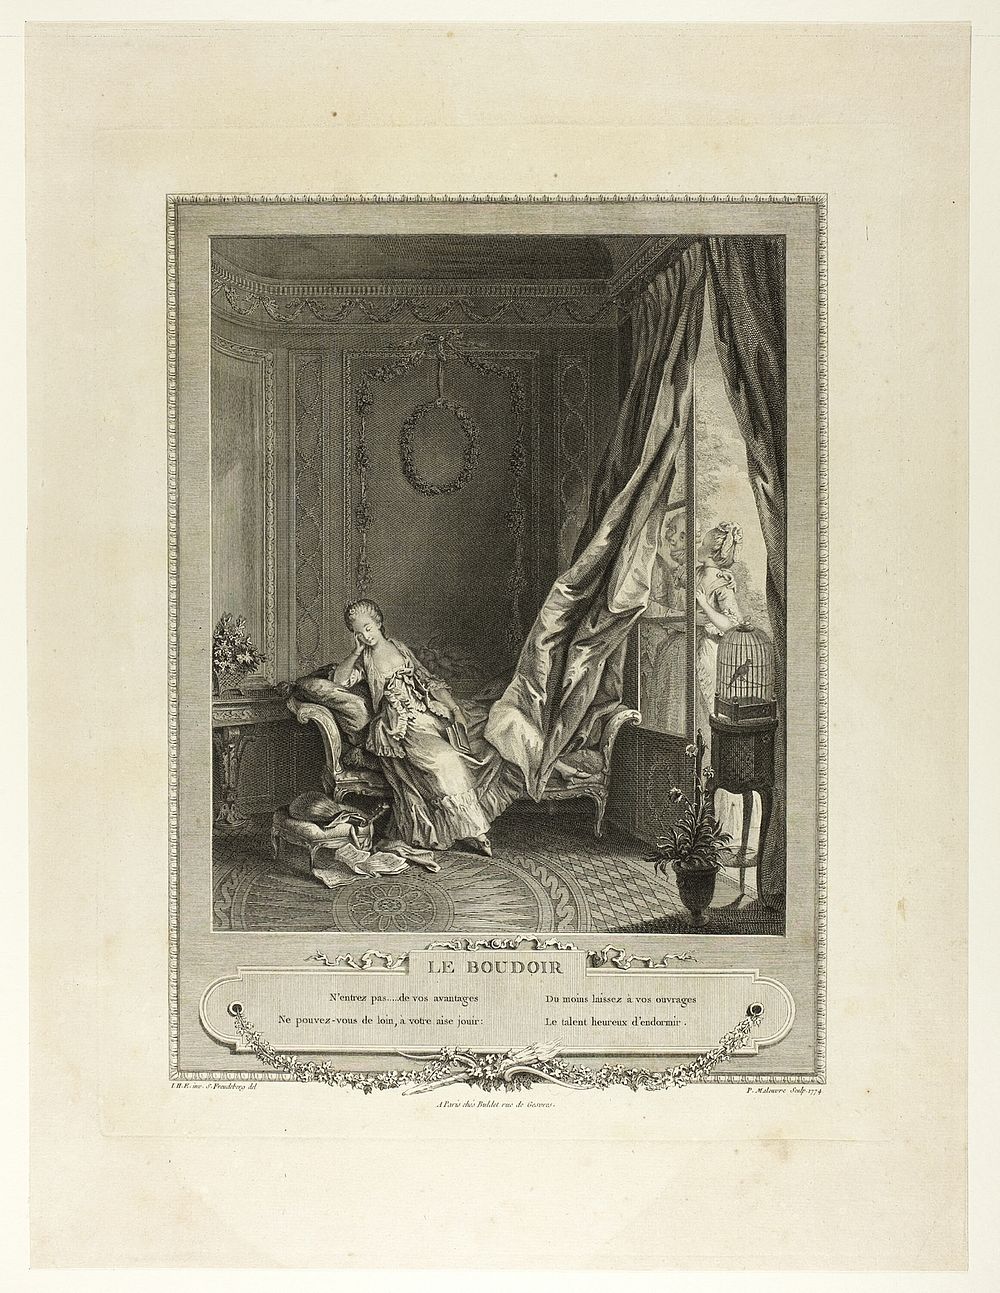 The Boudoir, from Monument du Costume Physique et Moral de la fin du Dix-huitième siècle by Pierre Maleuvre